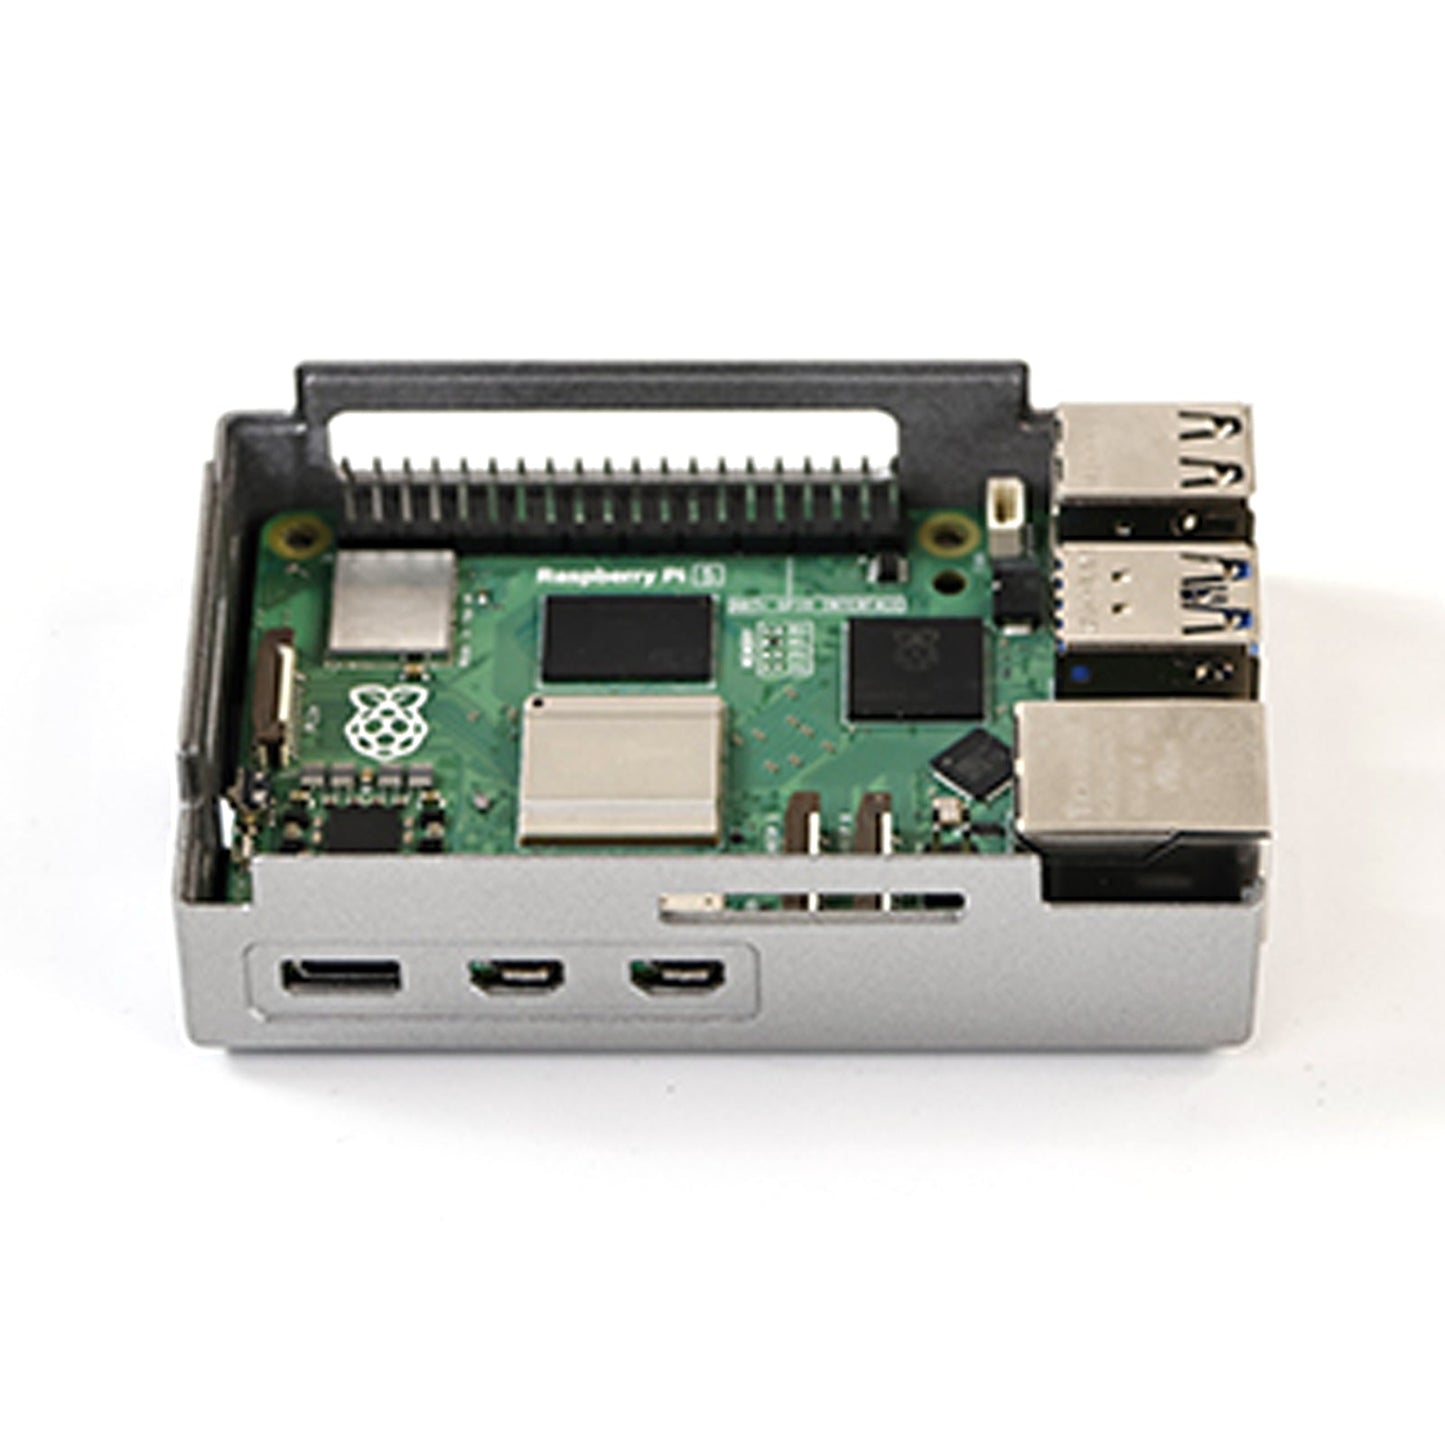 Silver Shadow Shell Raspberry pi5 Schutzbox, ABS-Material, Drehzahlregelung, Lüfter